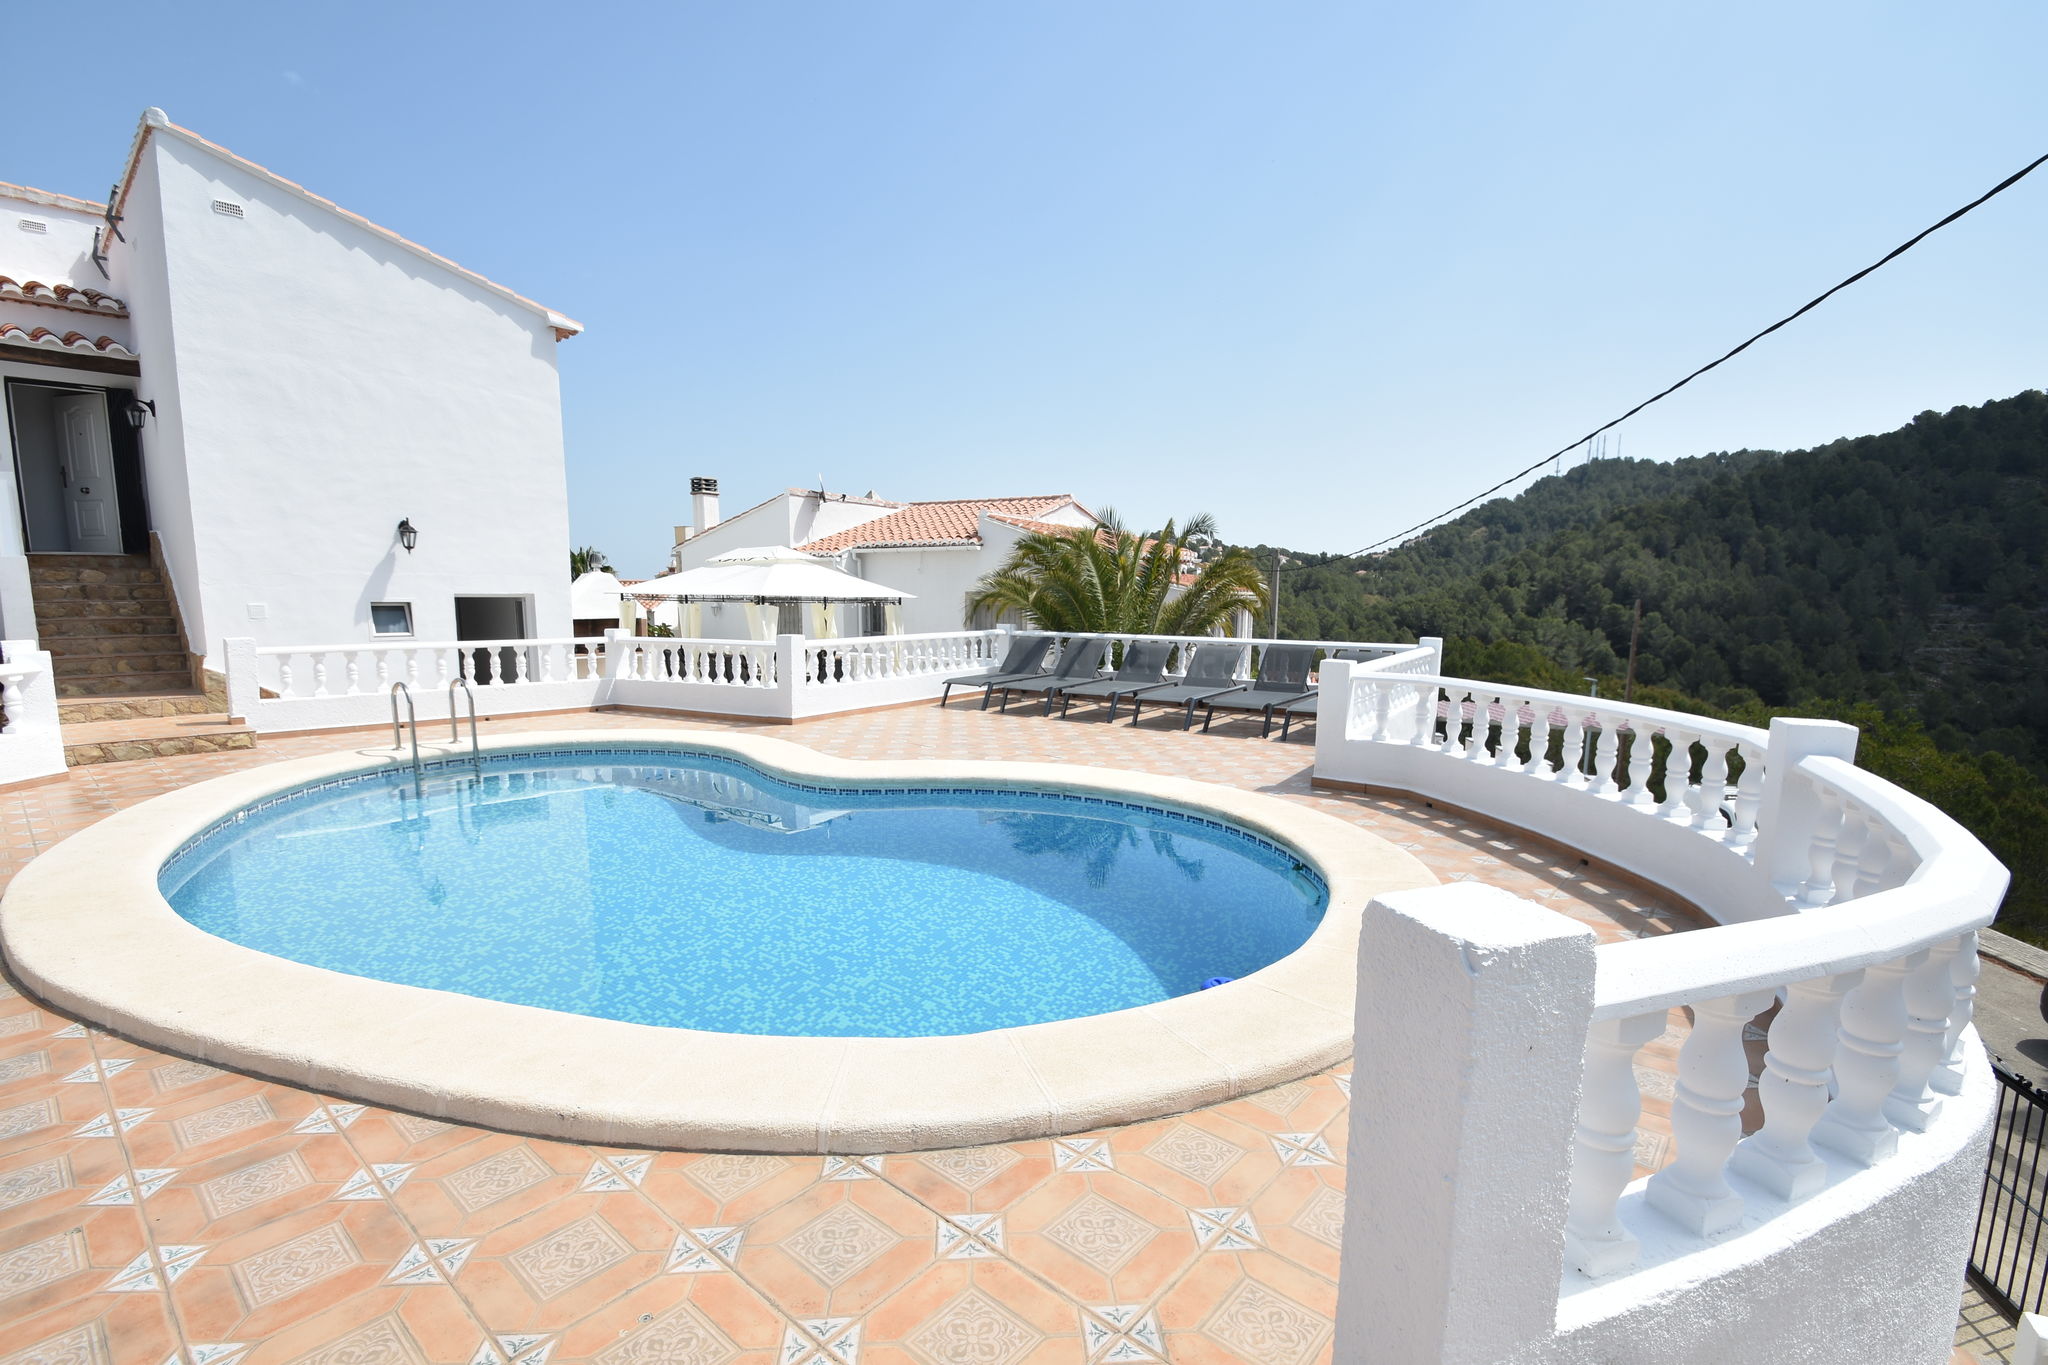 Fantastische villa in Oliva, geweldig uitzicht naar de bergen & privé zwembad